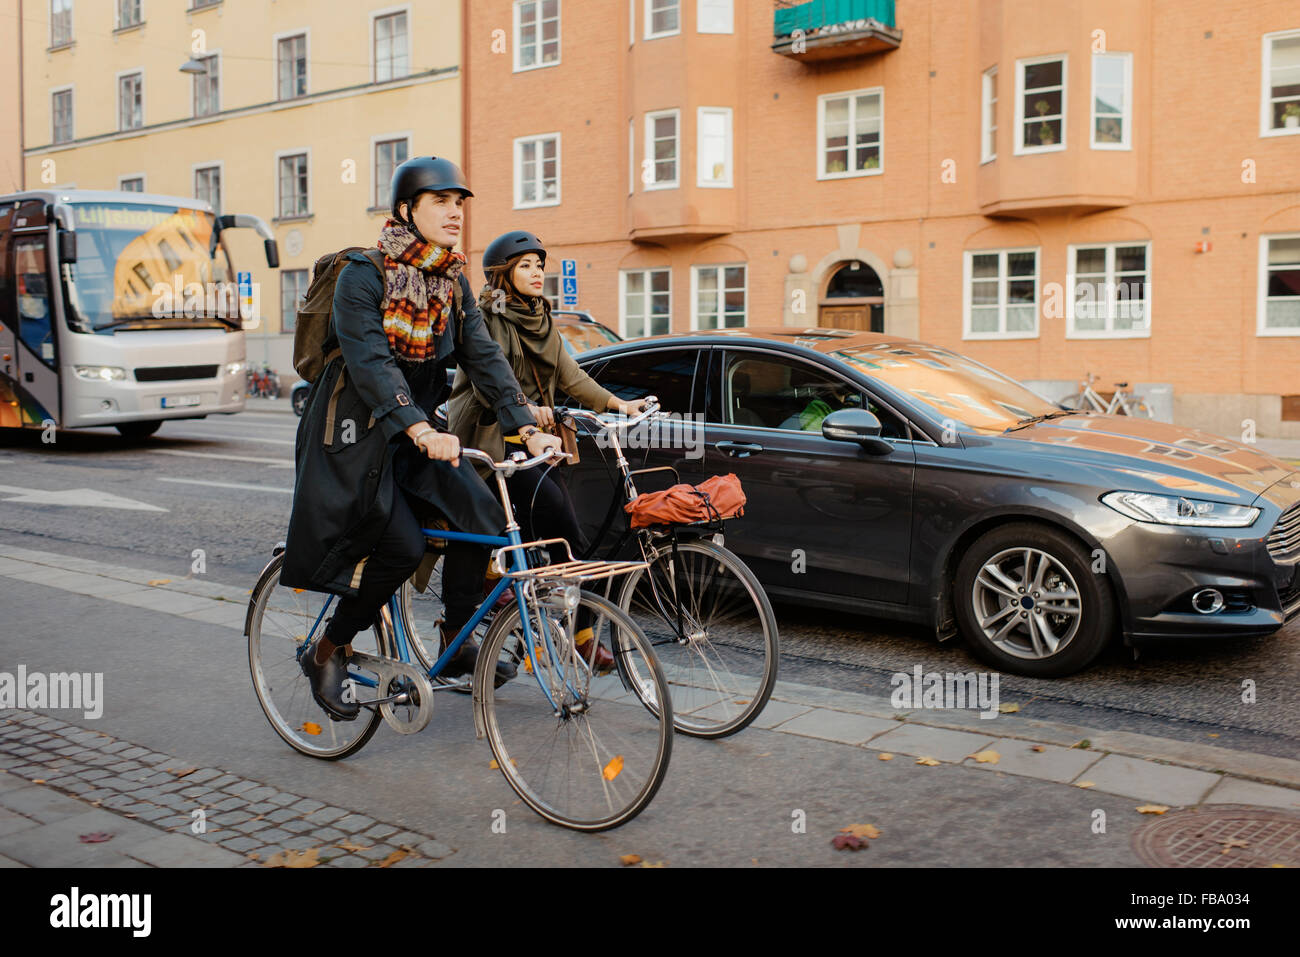 La Suède, l'Uppland, Stockholm, Vasatan, Sankt Eriksgatan, homme et femme, à vélo on city street Banque D'Images